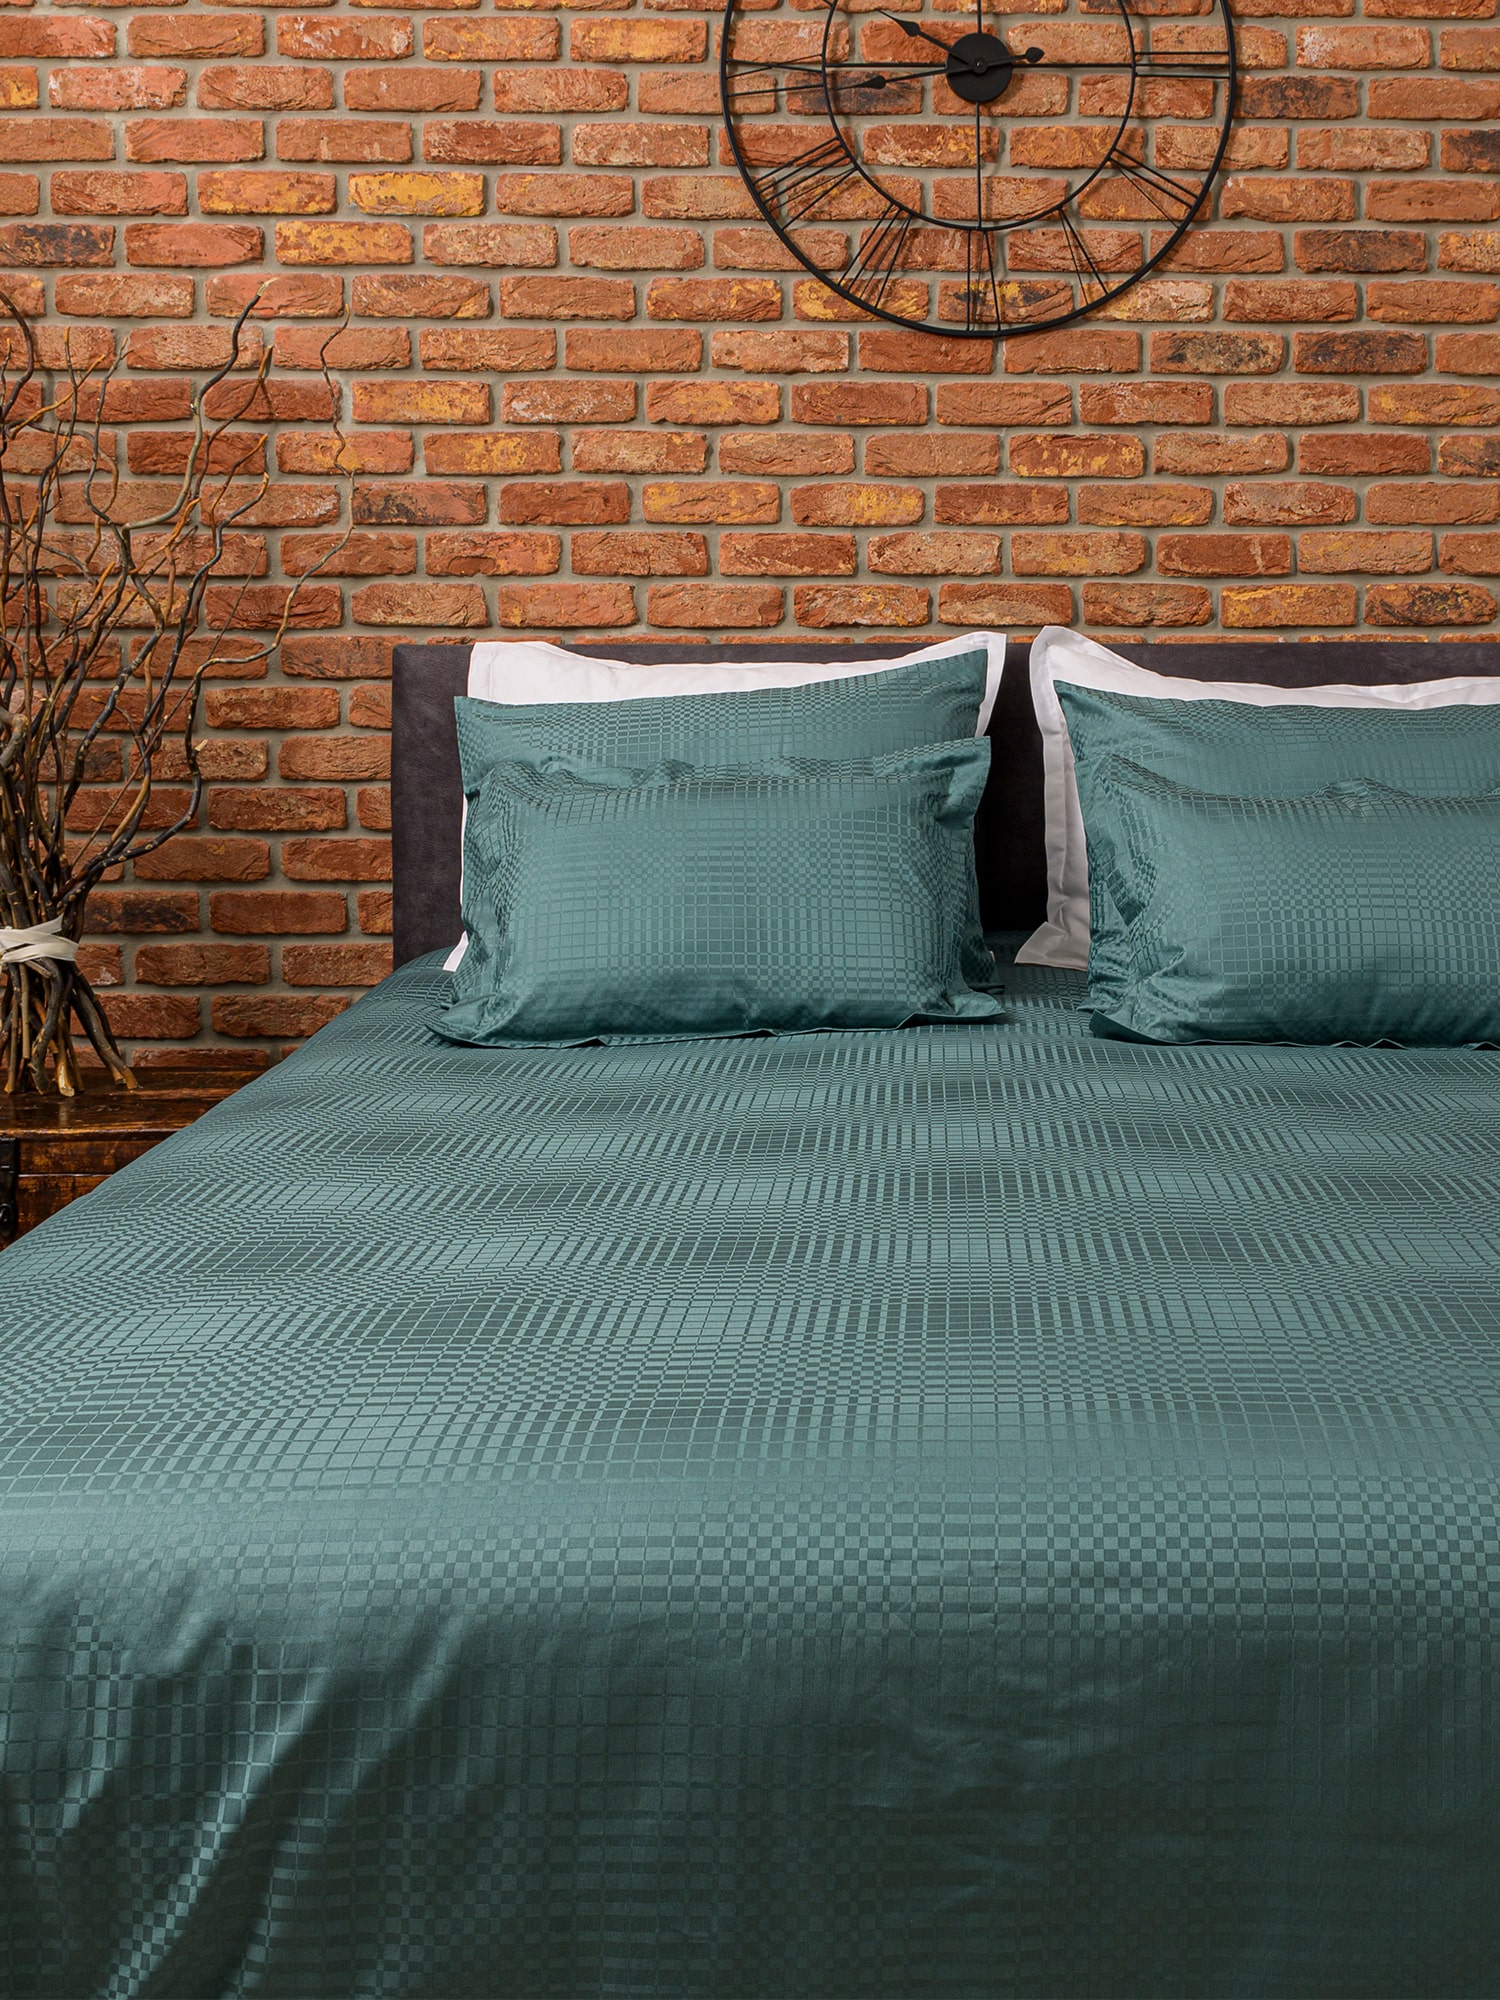 posteljina zelena jade žad navlaka jastučnica damast 100 posto pamuk 150x200